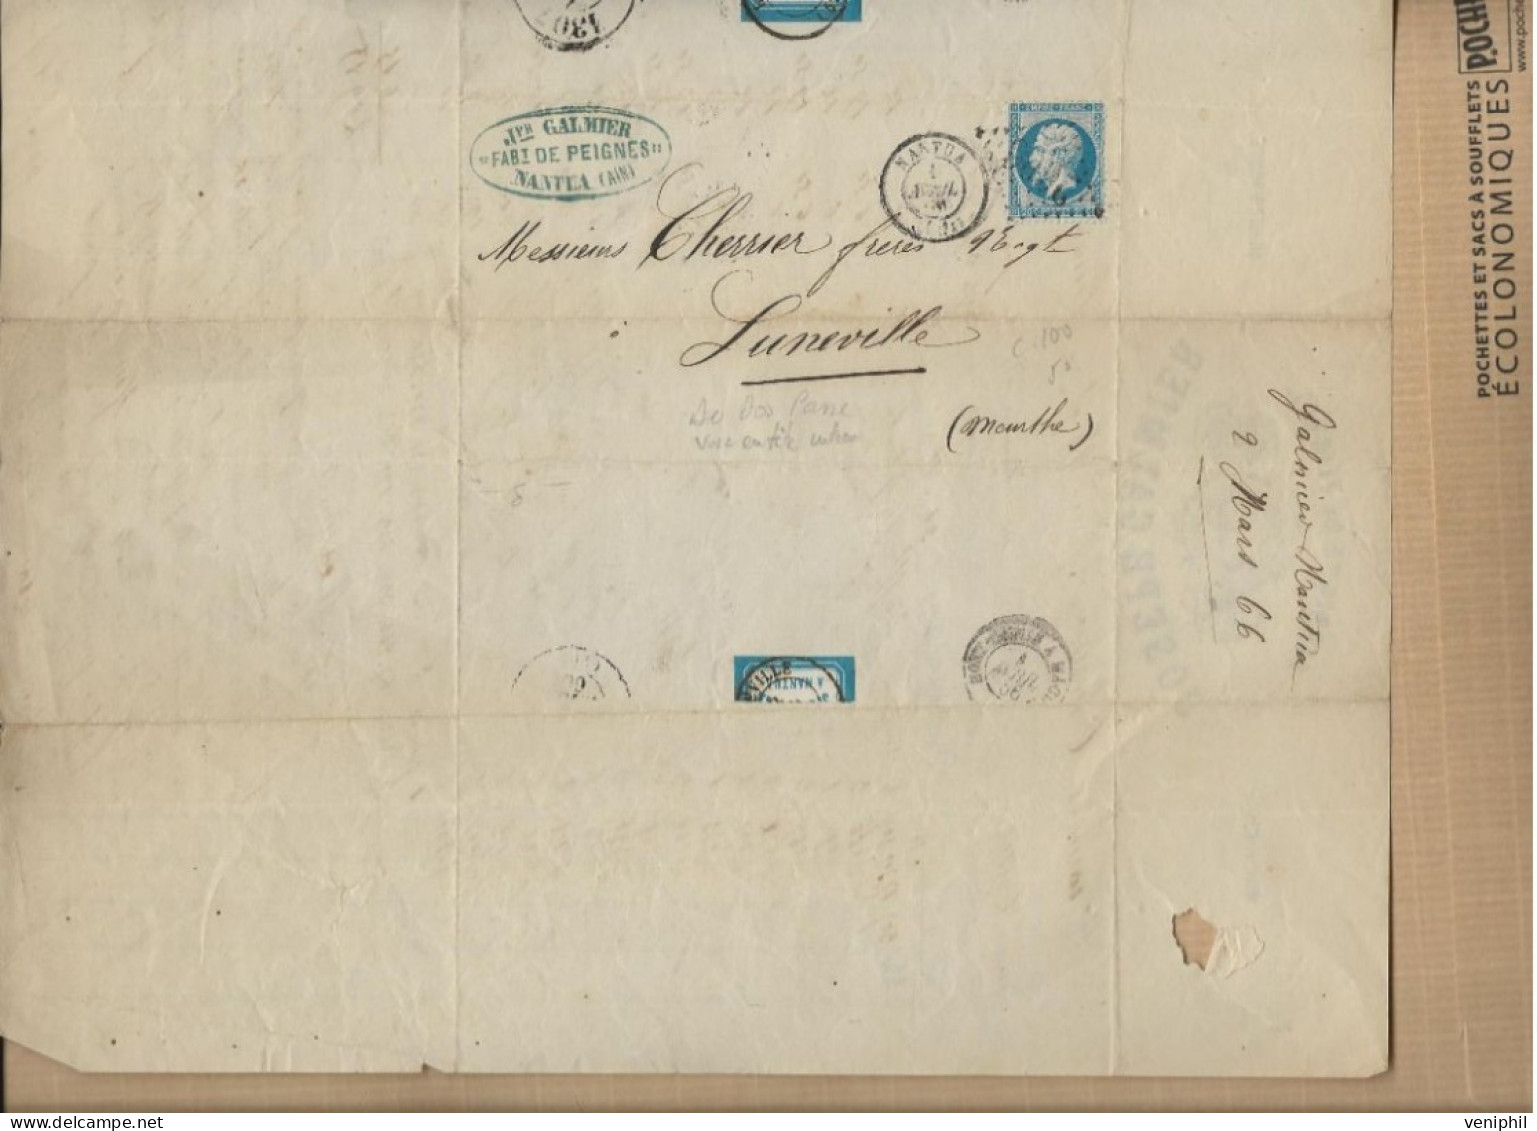 FABRIQUE DE PEIGNES - JOSEPH GALMIER- NANTUA -AIN - ANNEE 1866 - AFFRANCHIE N° 22 +CAD NANTUA - Petits Métiers